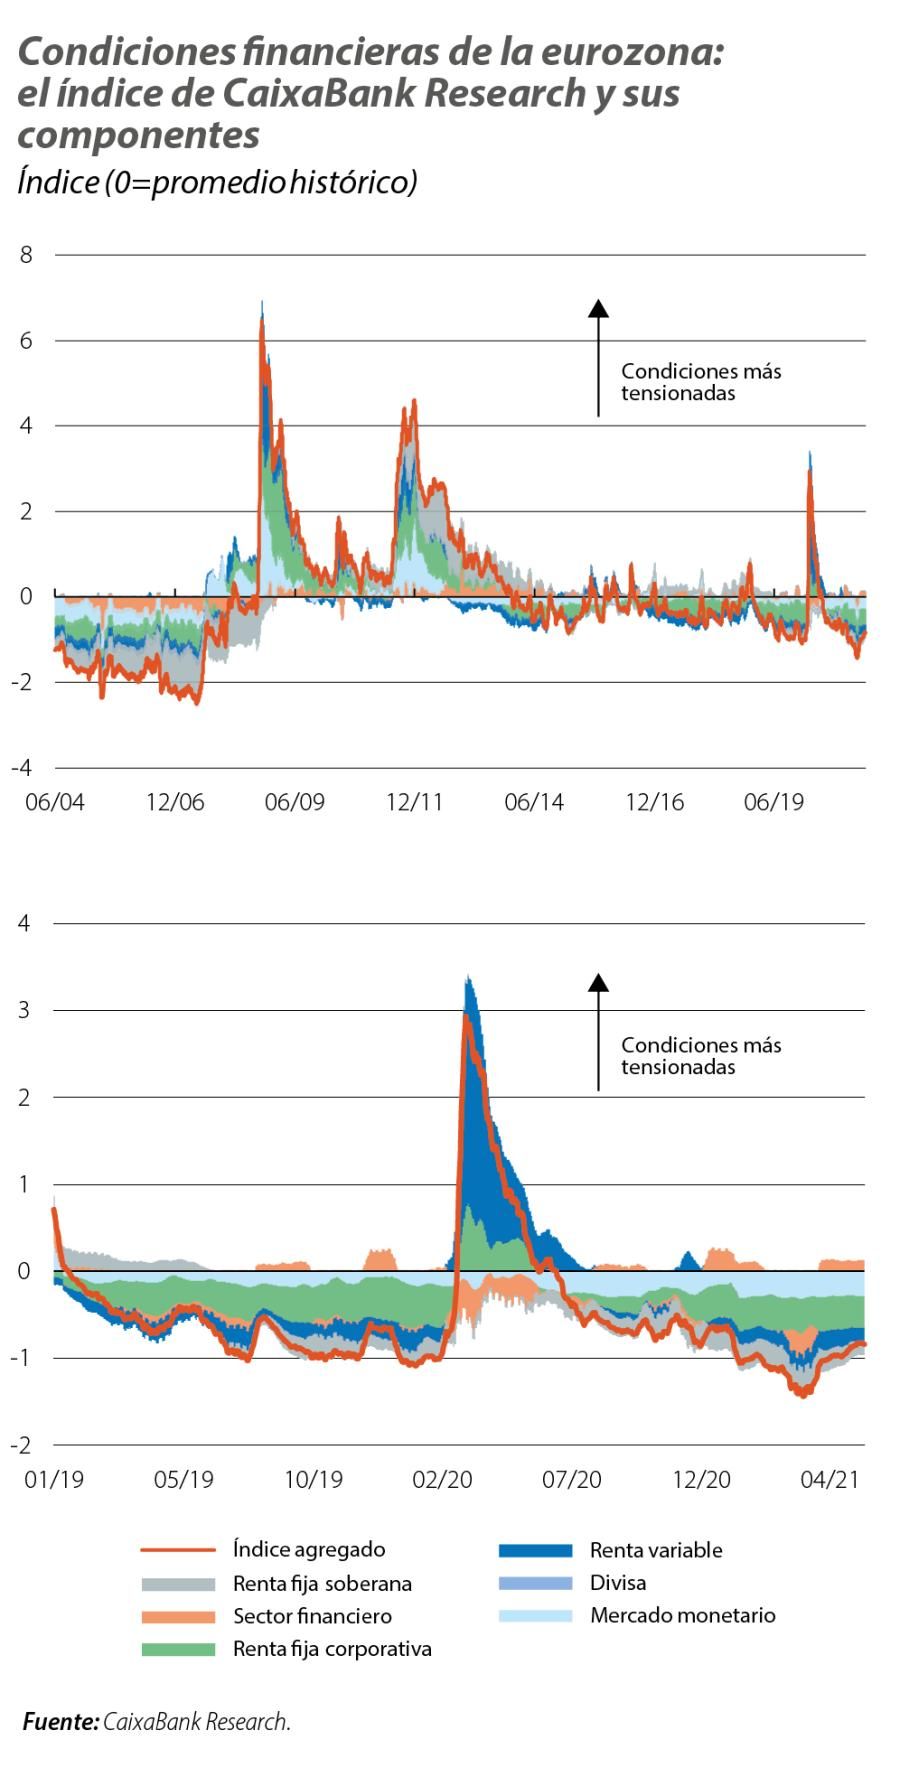 Condiciones financieras de la eurozona: el índice de CaixaBank Research y sus componentes